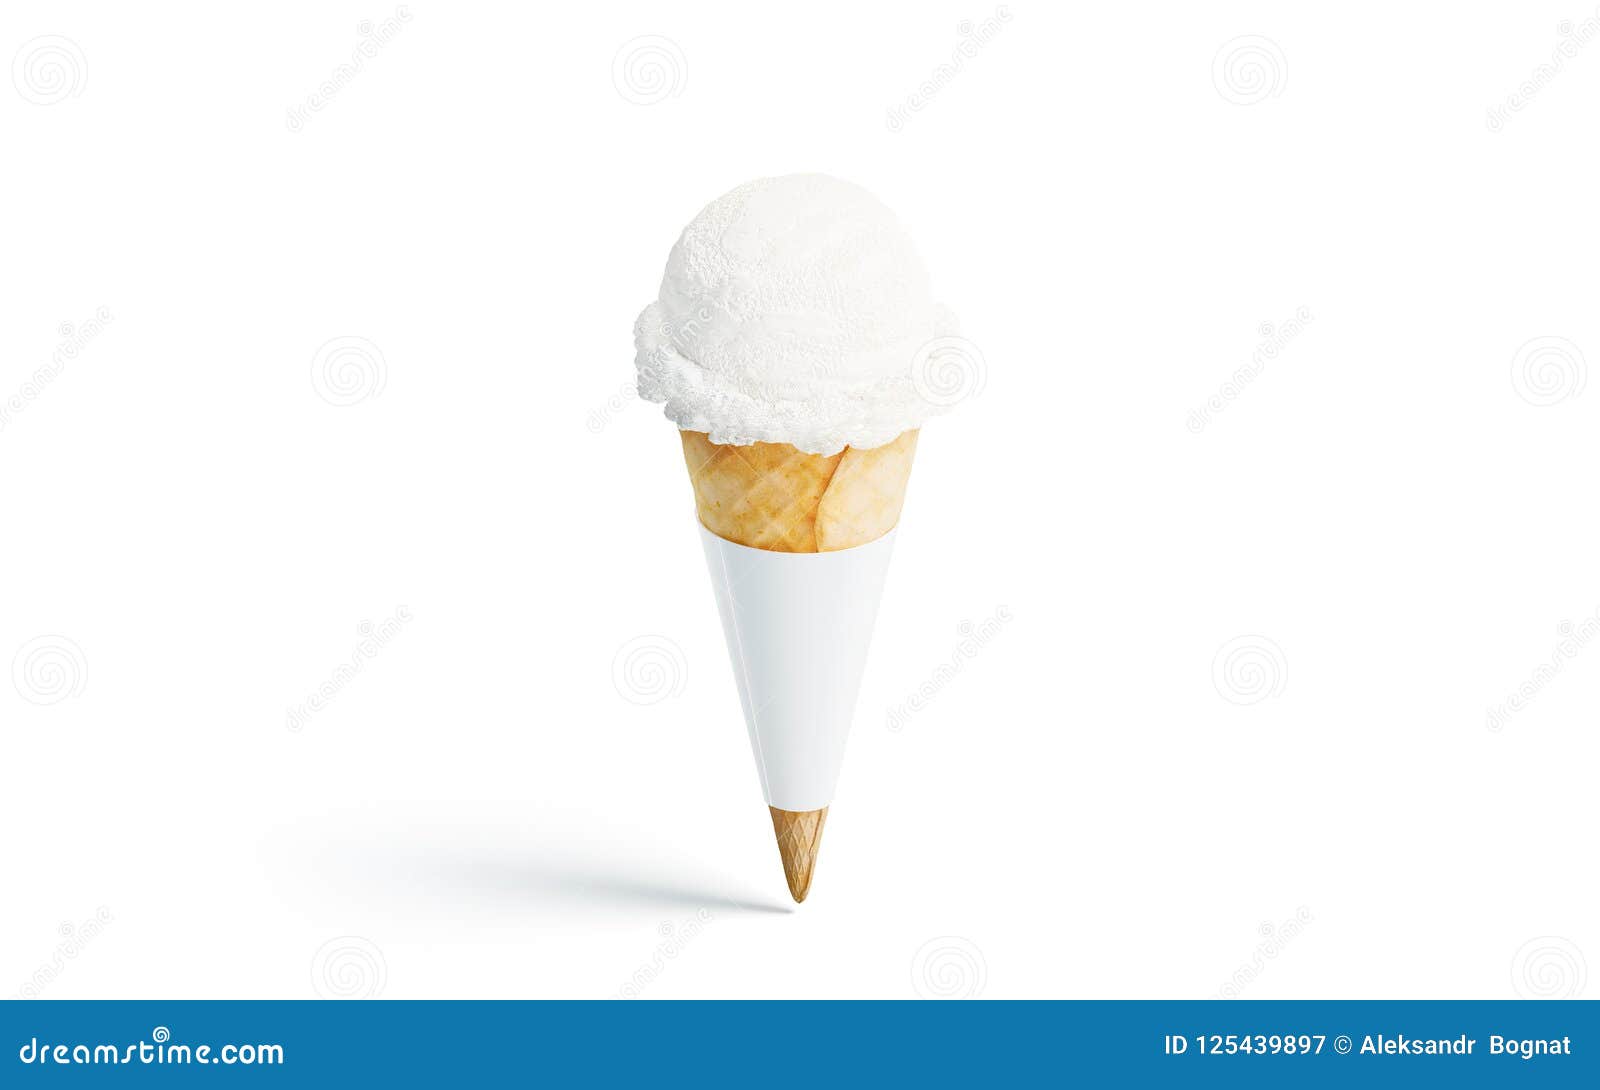 Download Ice Cream Cone Mockup Stock Illustrations 187 Ice Cream Cone Mockup Stock Illustrations Vectors Clipart Dreamstime